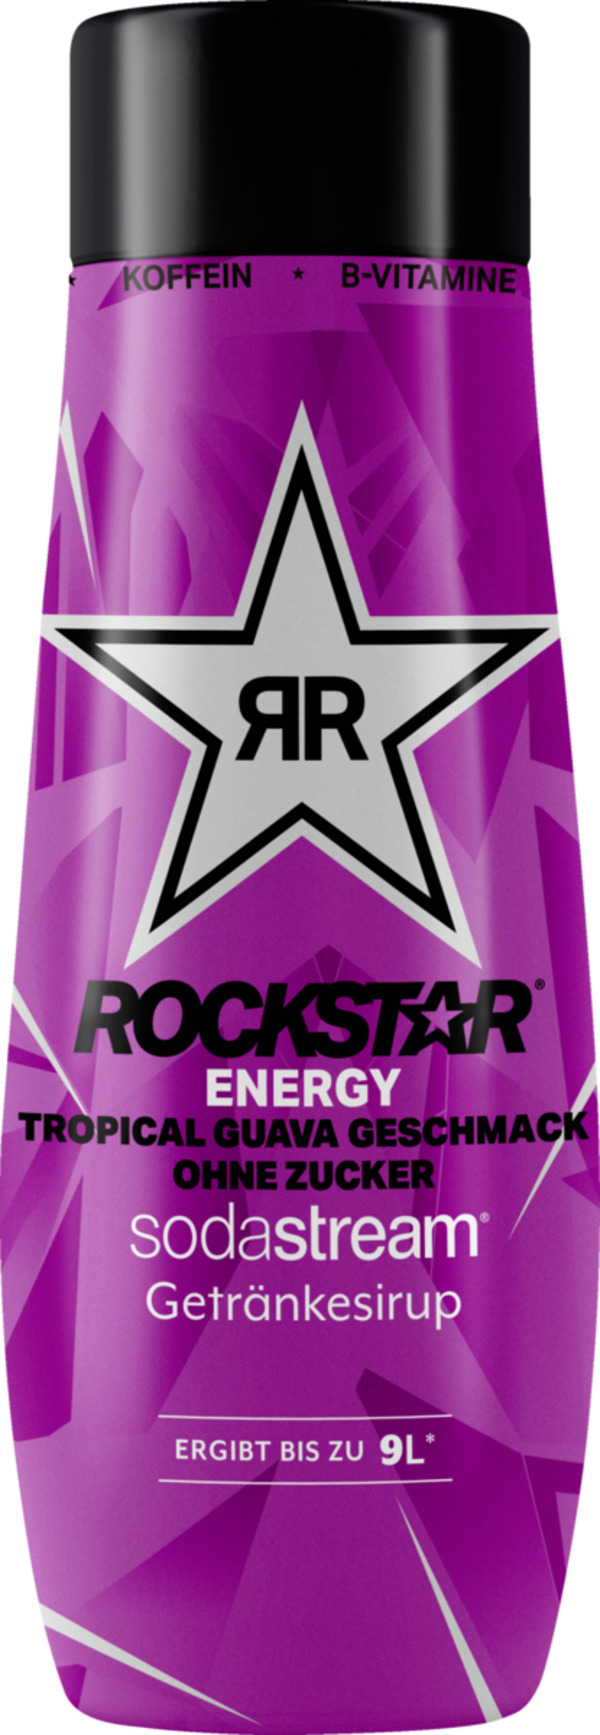 Bild 1 von SodaStream Rockstar Tropical Guava Sirup ohne Zucker